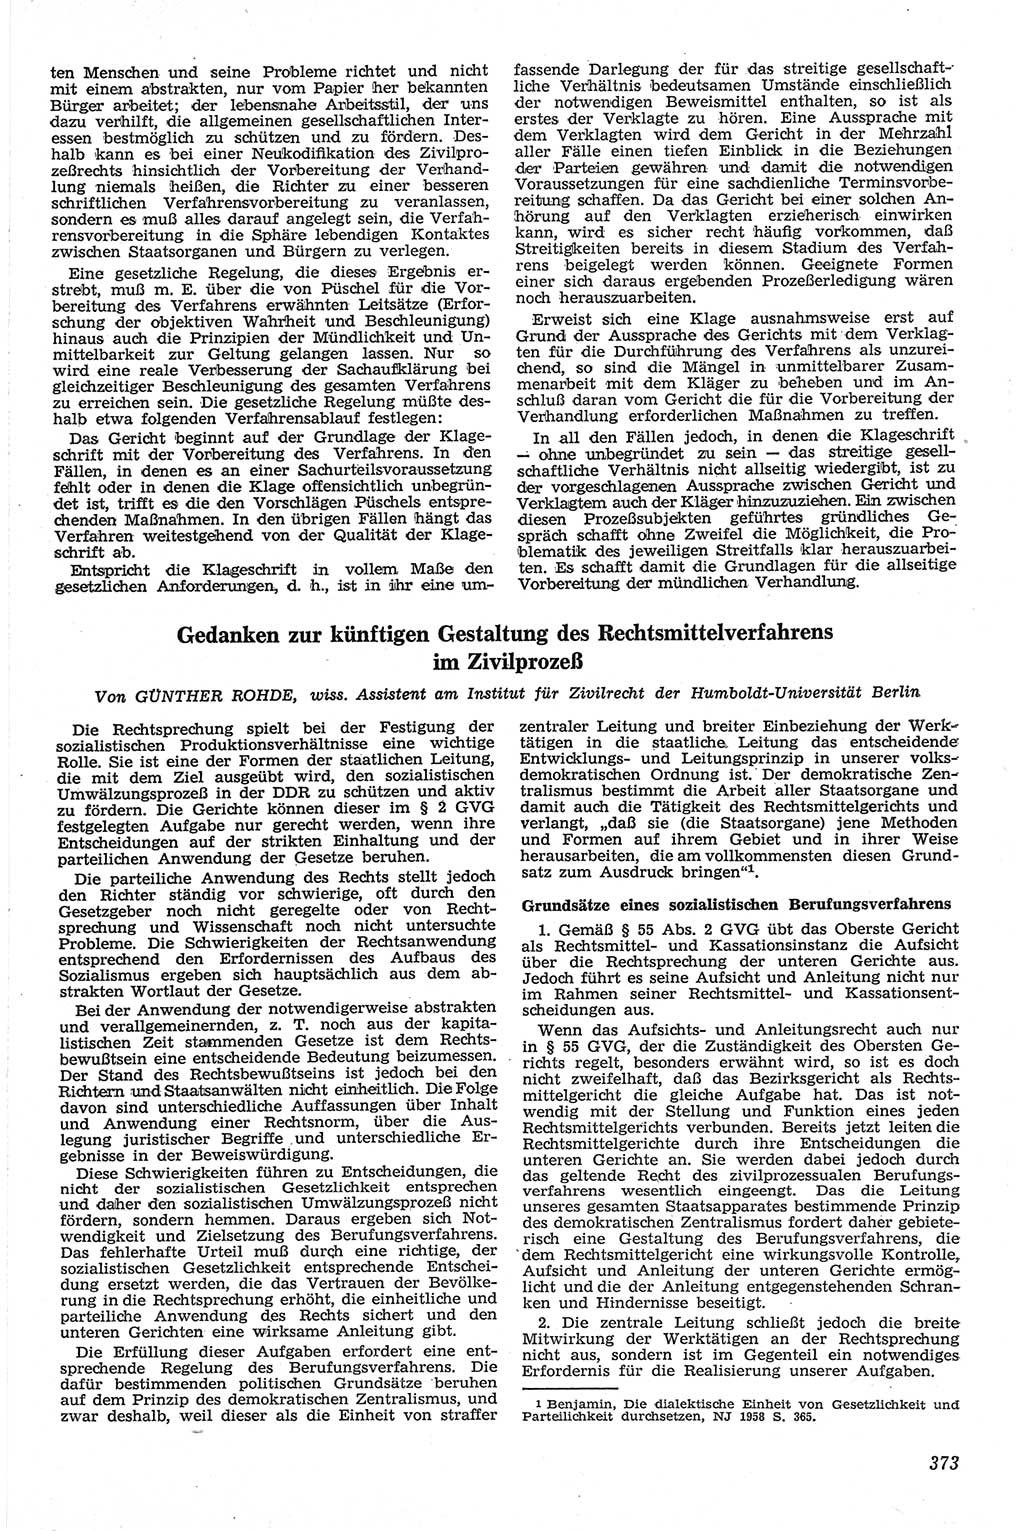 Neue Justiz (NJ), Zeitschrift für Recht und Rechtswissenschaft [Deutsche Demokratische Republik (DDR)], 13. Jahrgang 1959, Seite 373 (NJ DDR 1959, S. 373)